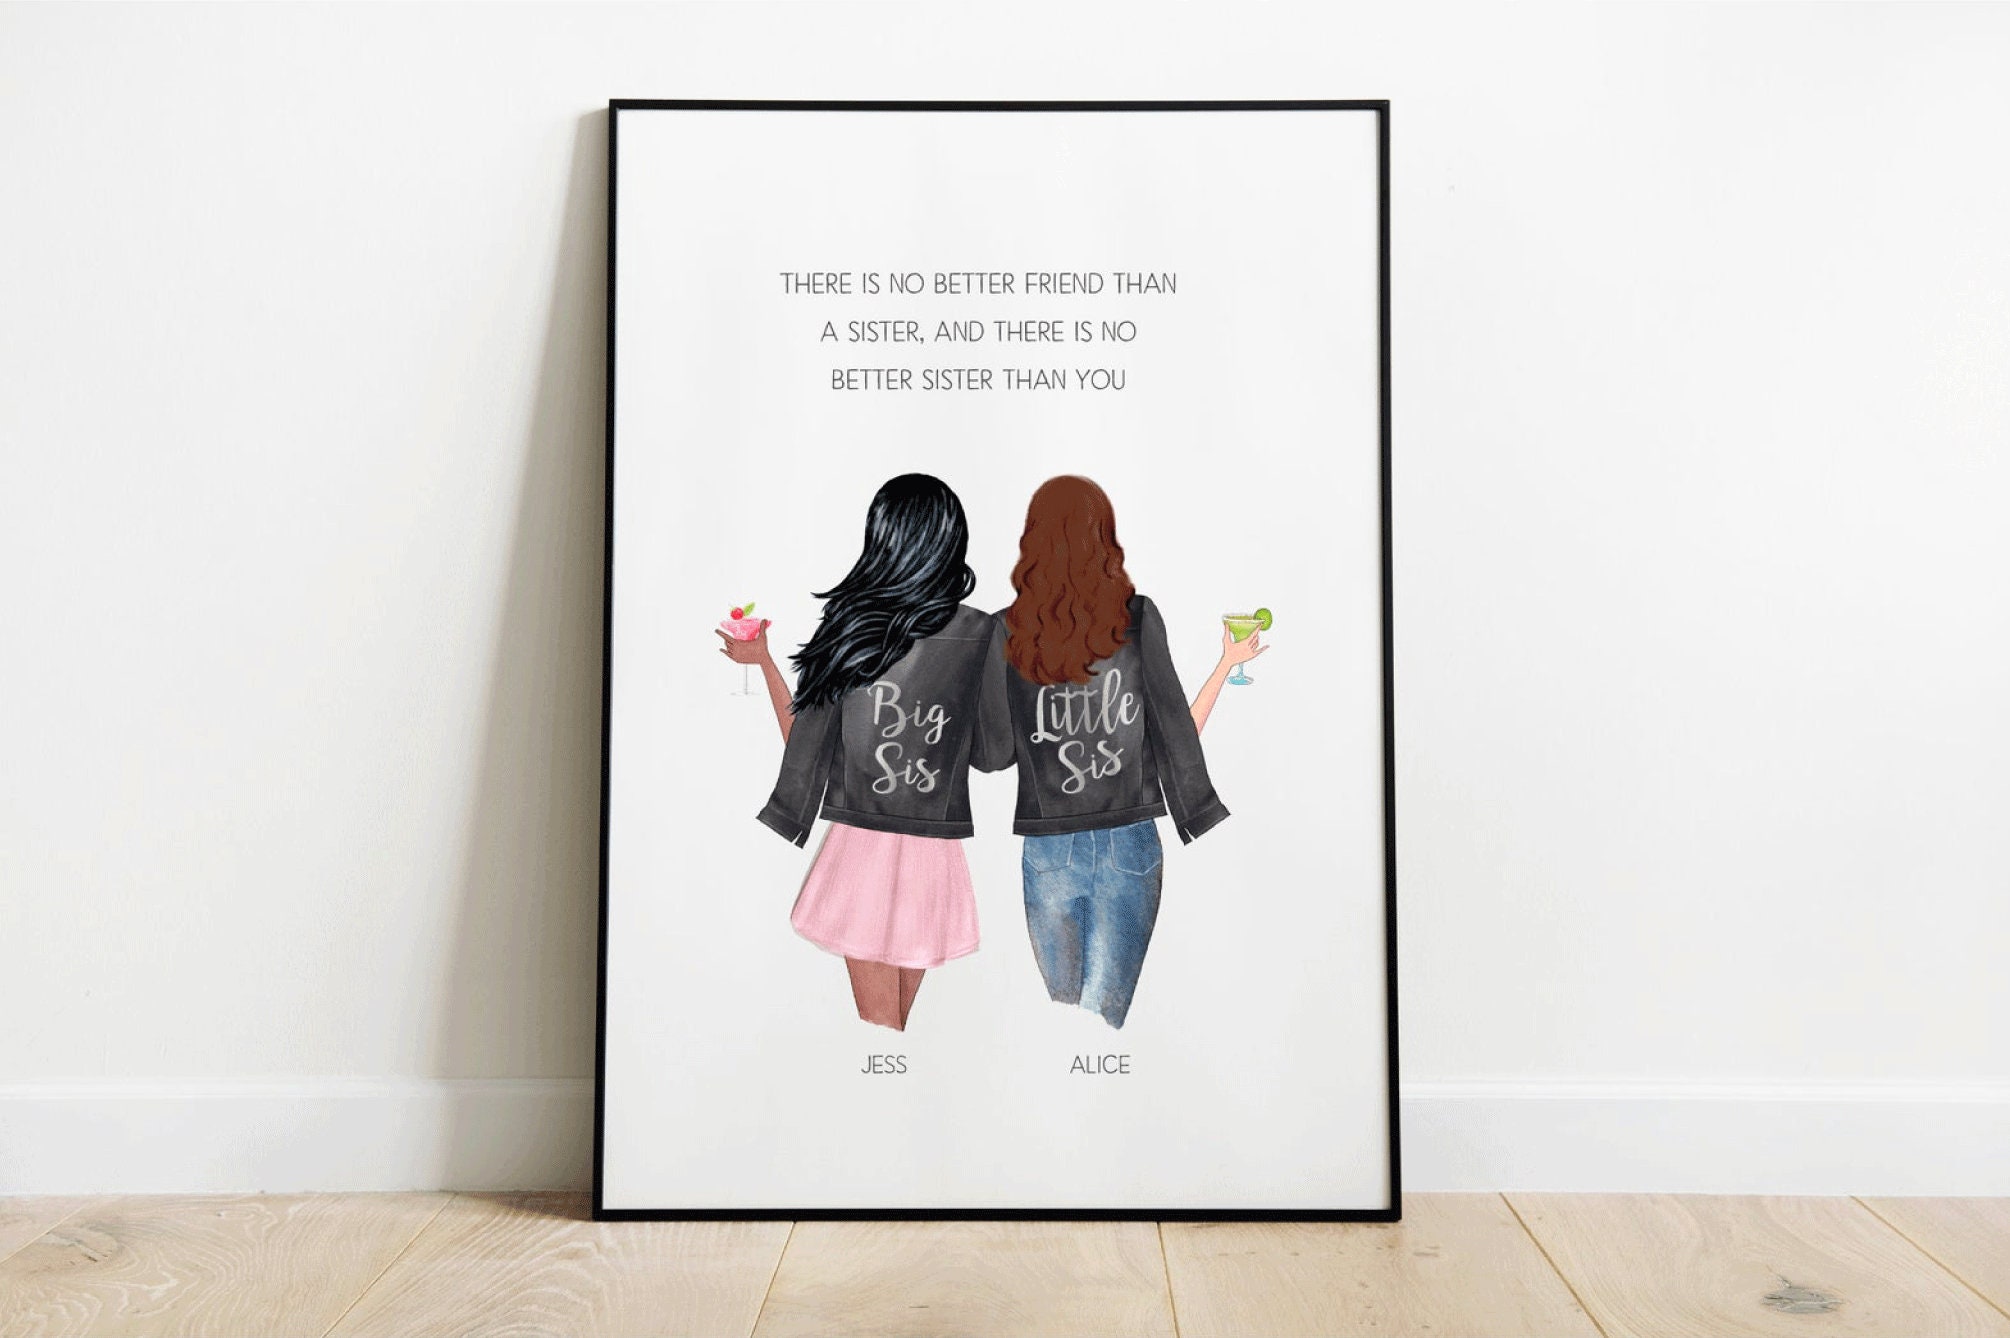 Sisters rule. Постер сестре. Плакат для сестры. Постер сестре на день рождения шаблоны. Постеры сестрички.